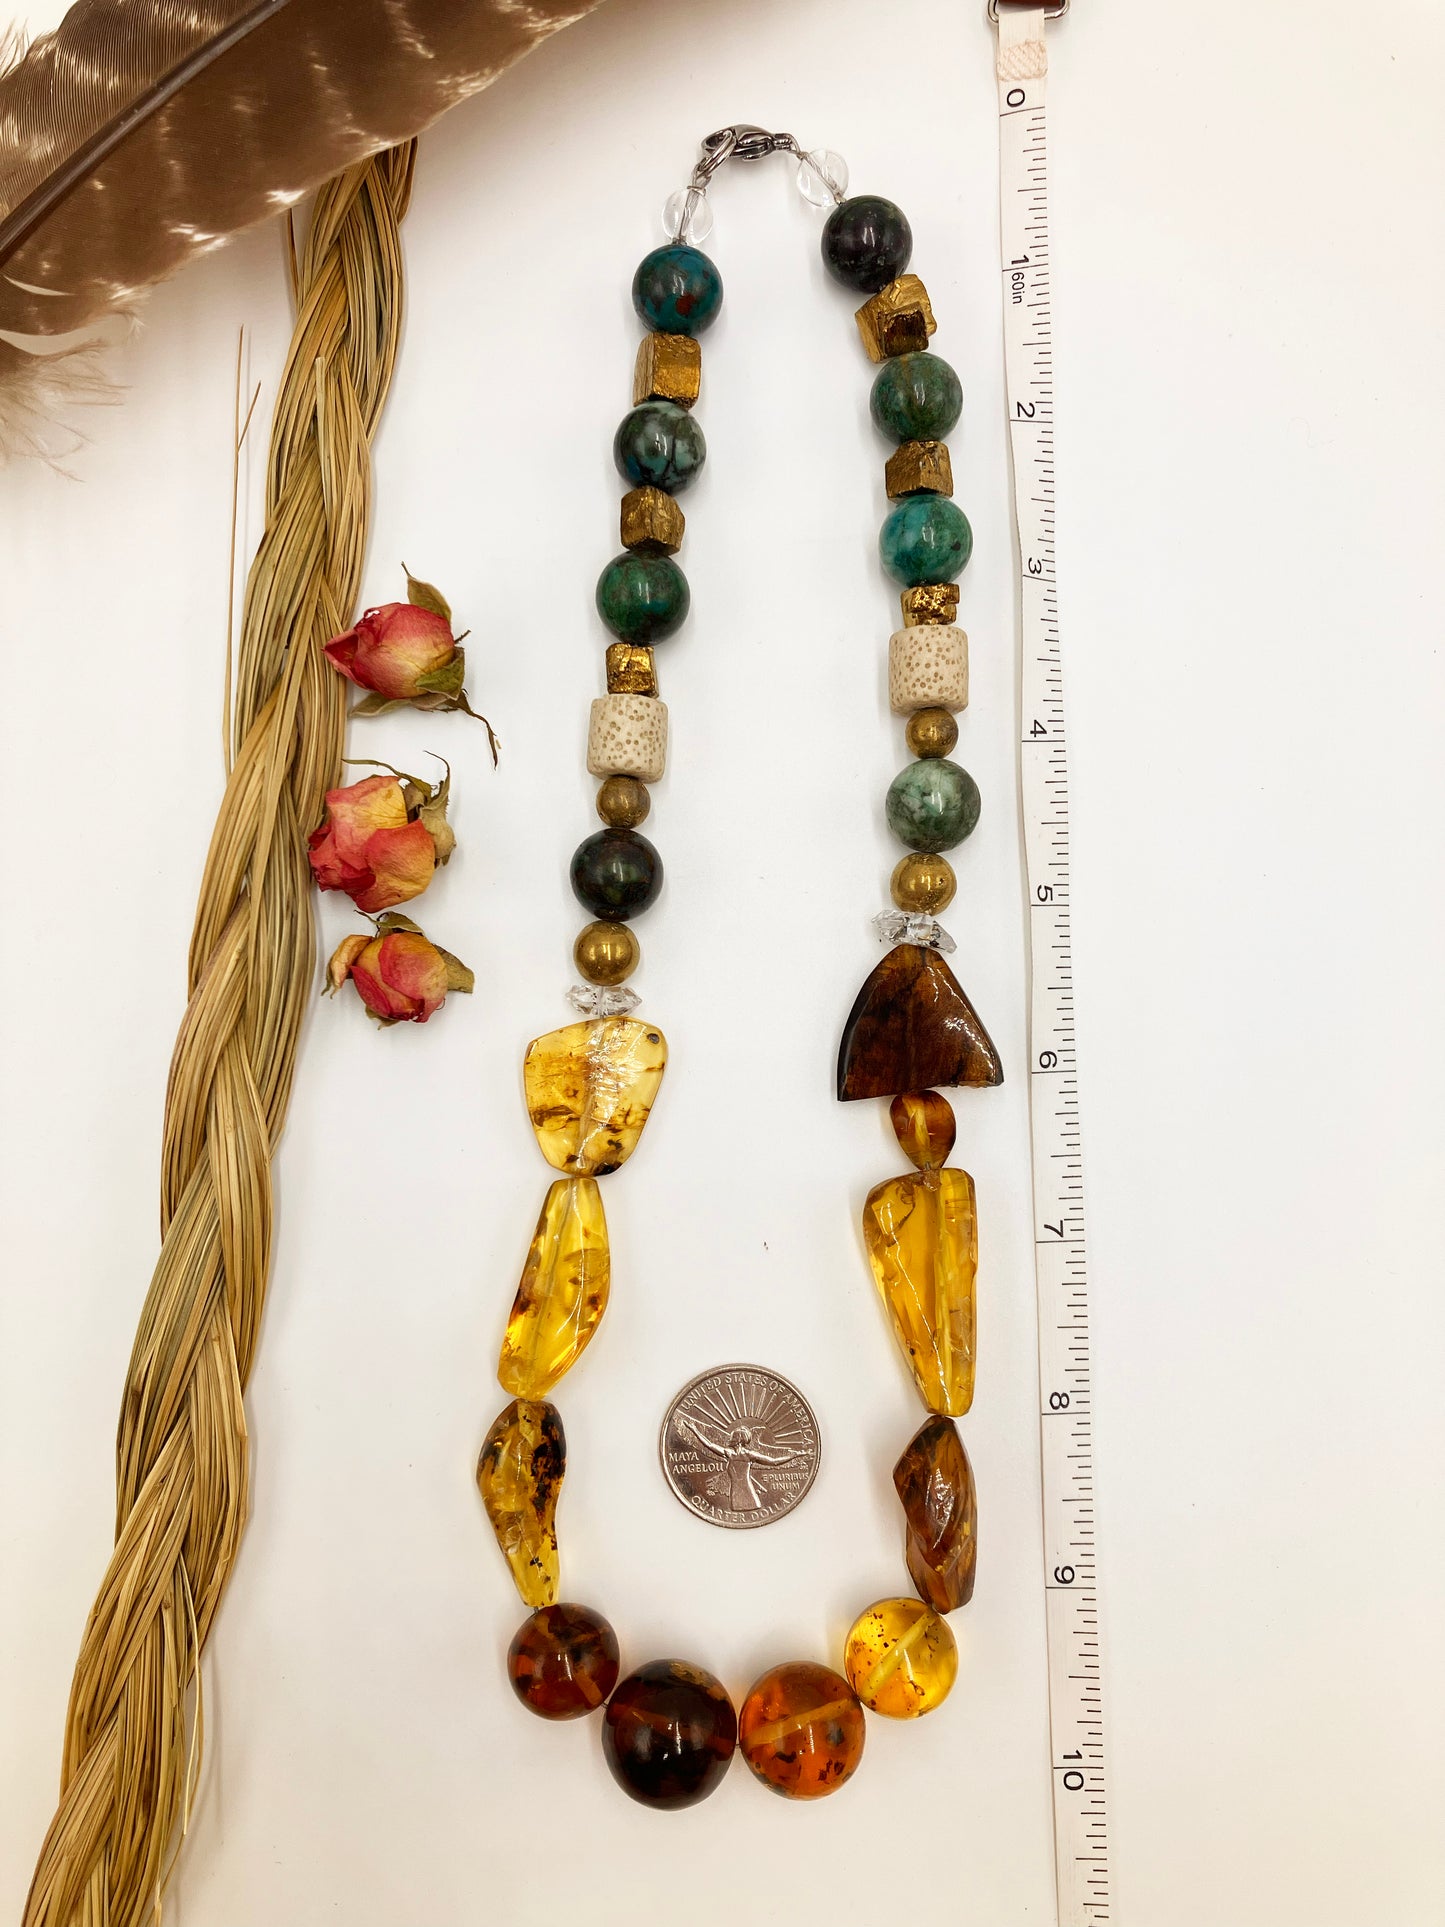 Chiapas Amber Necklace